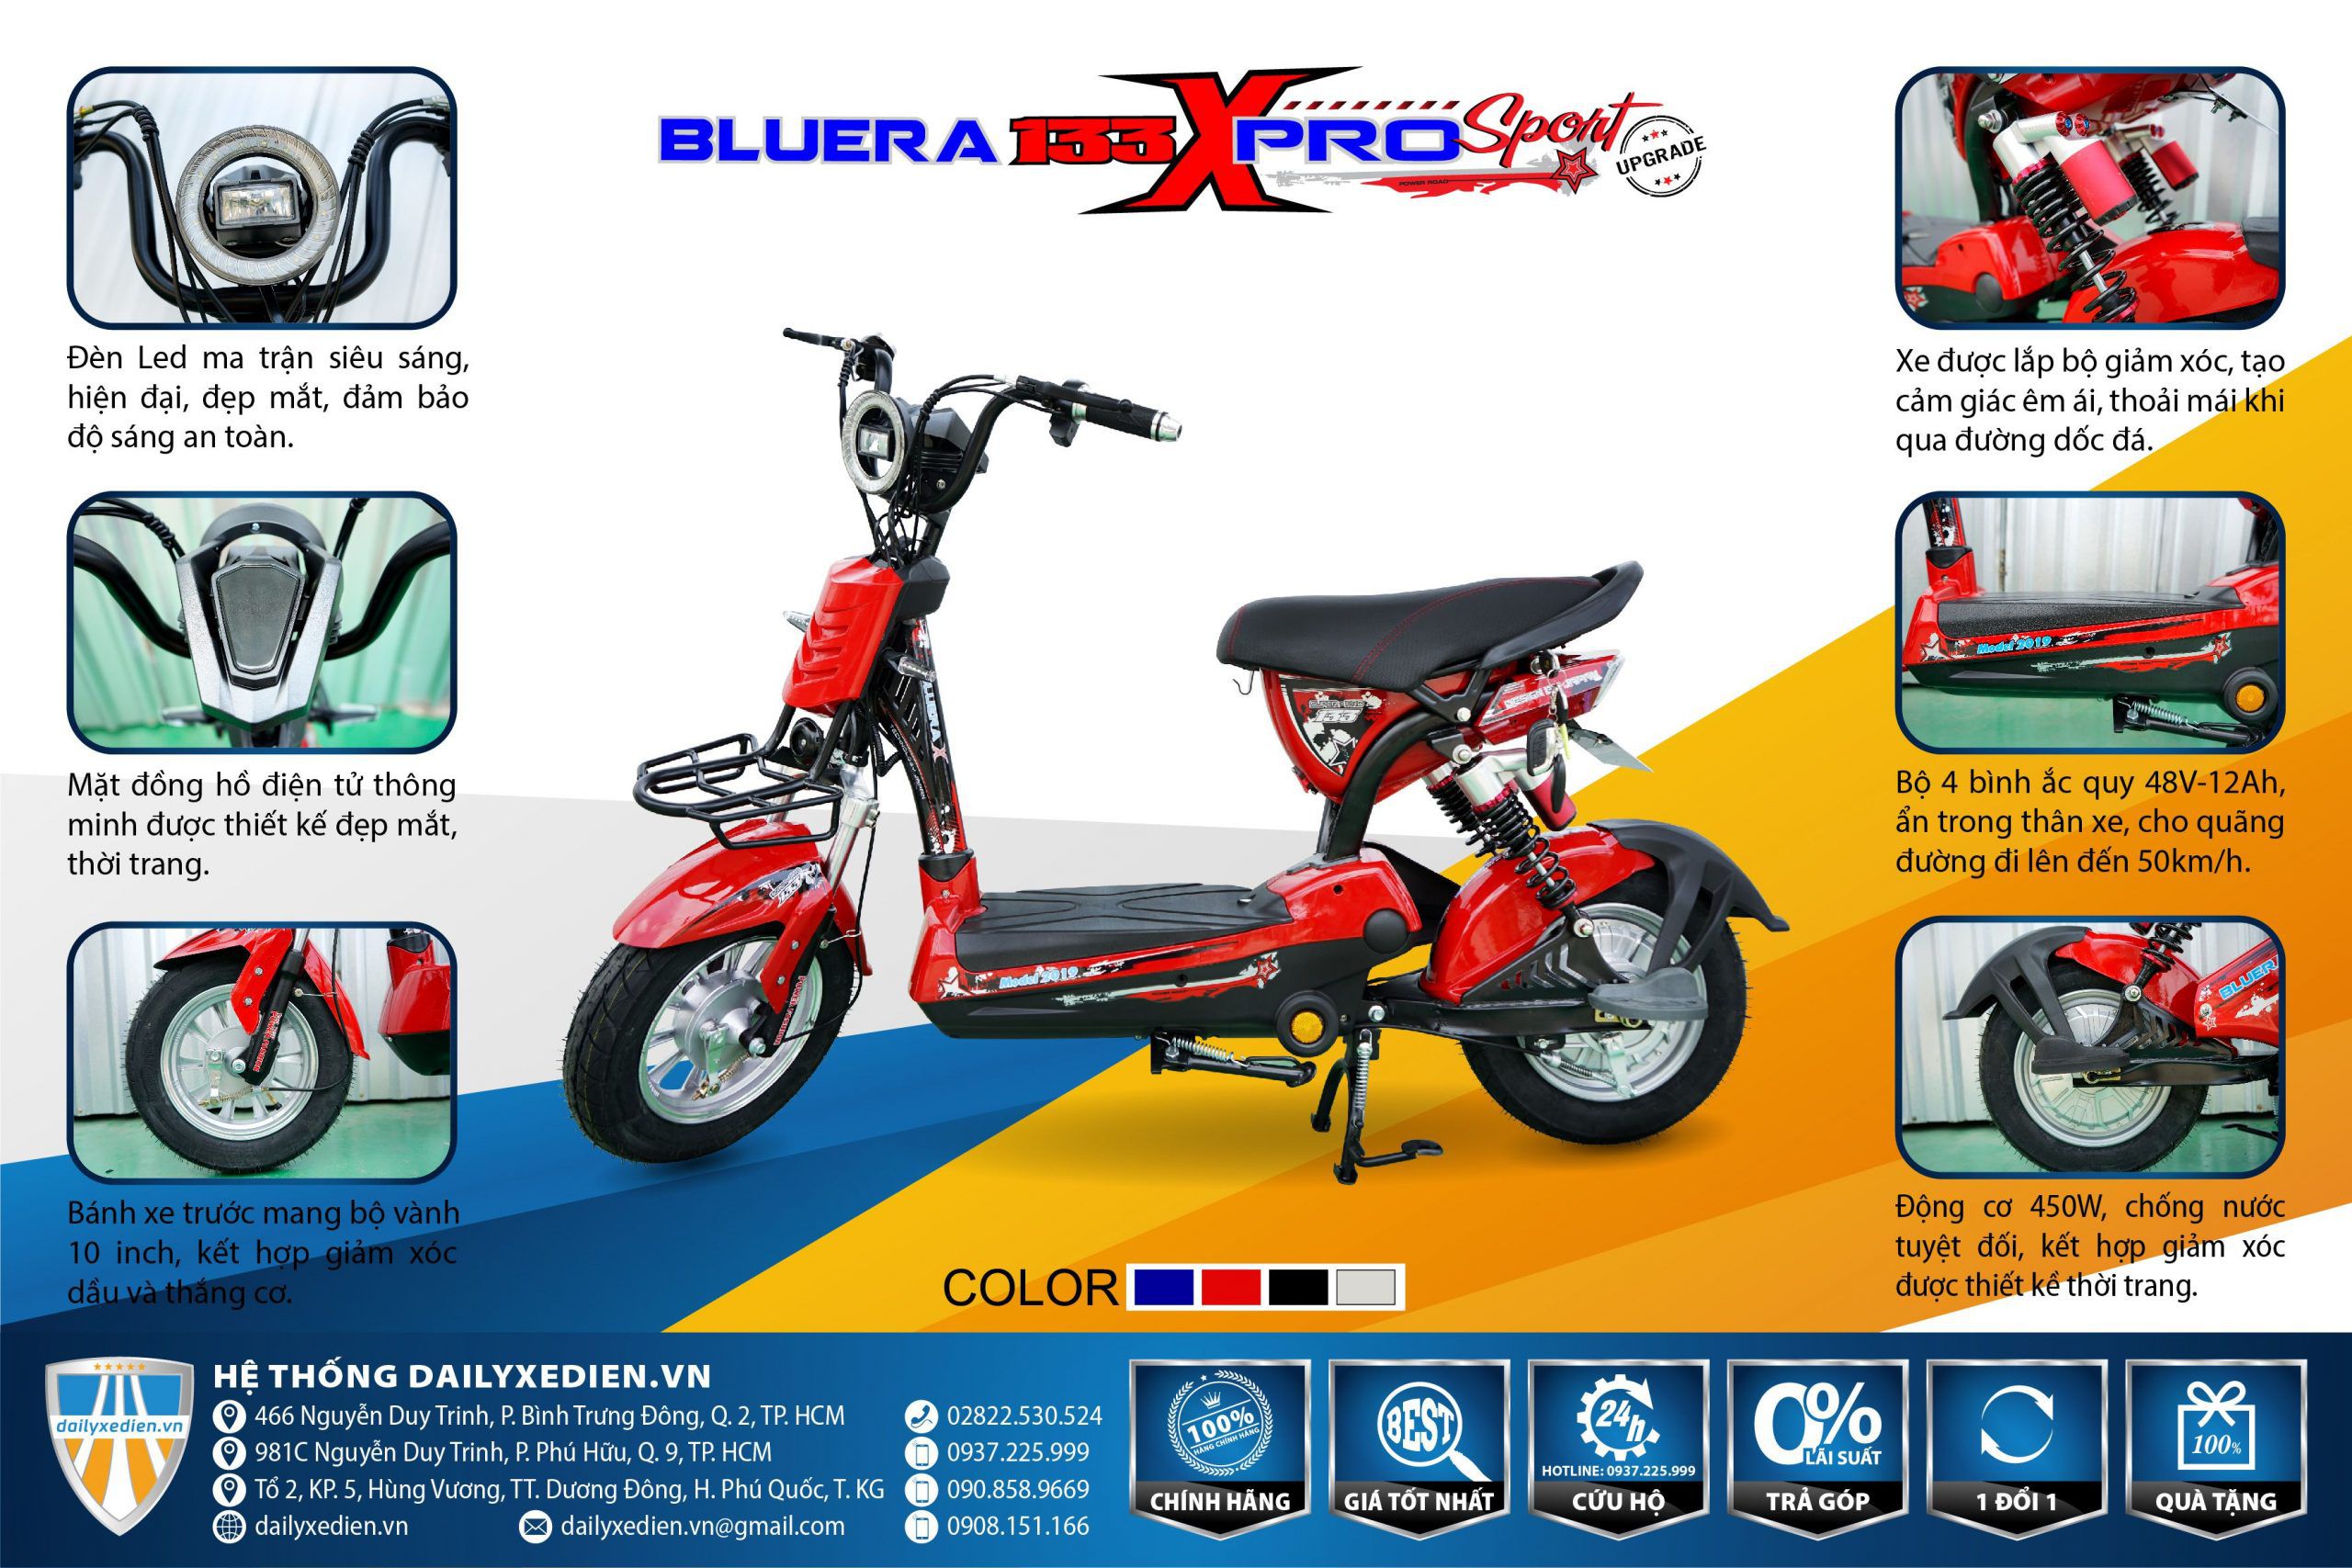 xe dap dien 133 pro upgrade 01 scaled - Xe đạp điện Bluera 133 Xpro Sport Upgrade